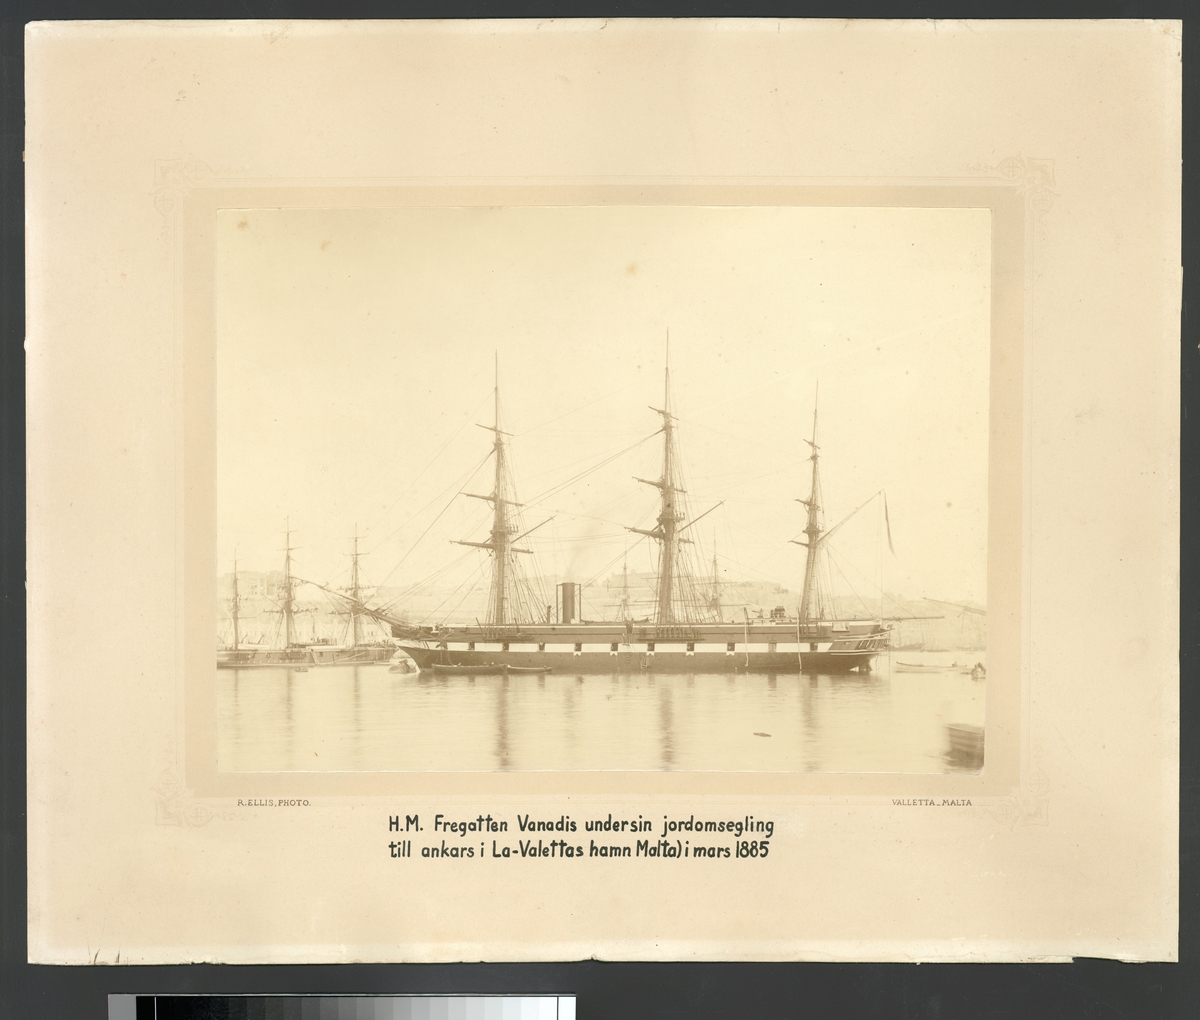 Bilden visar ångfregatten Vanadis från styrbordssida. Skeppet ankra vid en boj i Vallettas hamn på Malta under sin långresa 1883-1885. Alla segel är bärgade, styckportarna är öppna och kanonerna utförda. Ur skorstenen stiger rök. En grupp sjömän står på akterdäcket. Från akterskeppet hänger en repstege ner till vattenytan och flera små båtar verka trafikera från och till fregatten.
I bakgrunden syns Valettas stadsbefästningar och regeringspalatset Auberge de Castille et Léon.